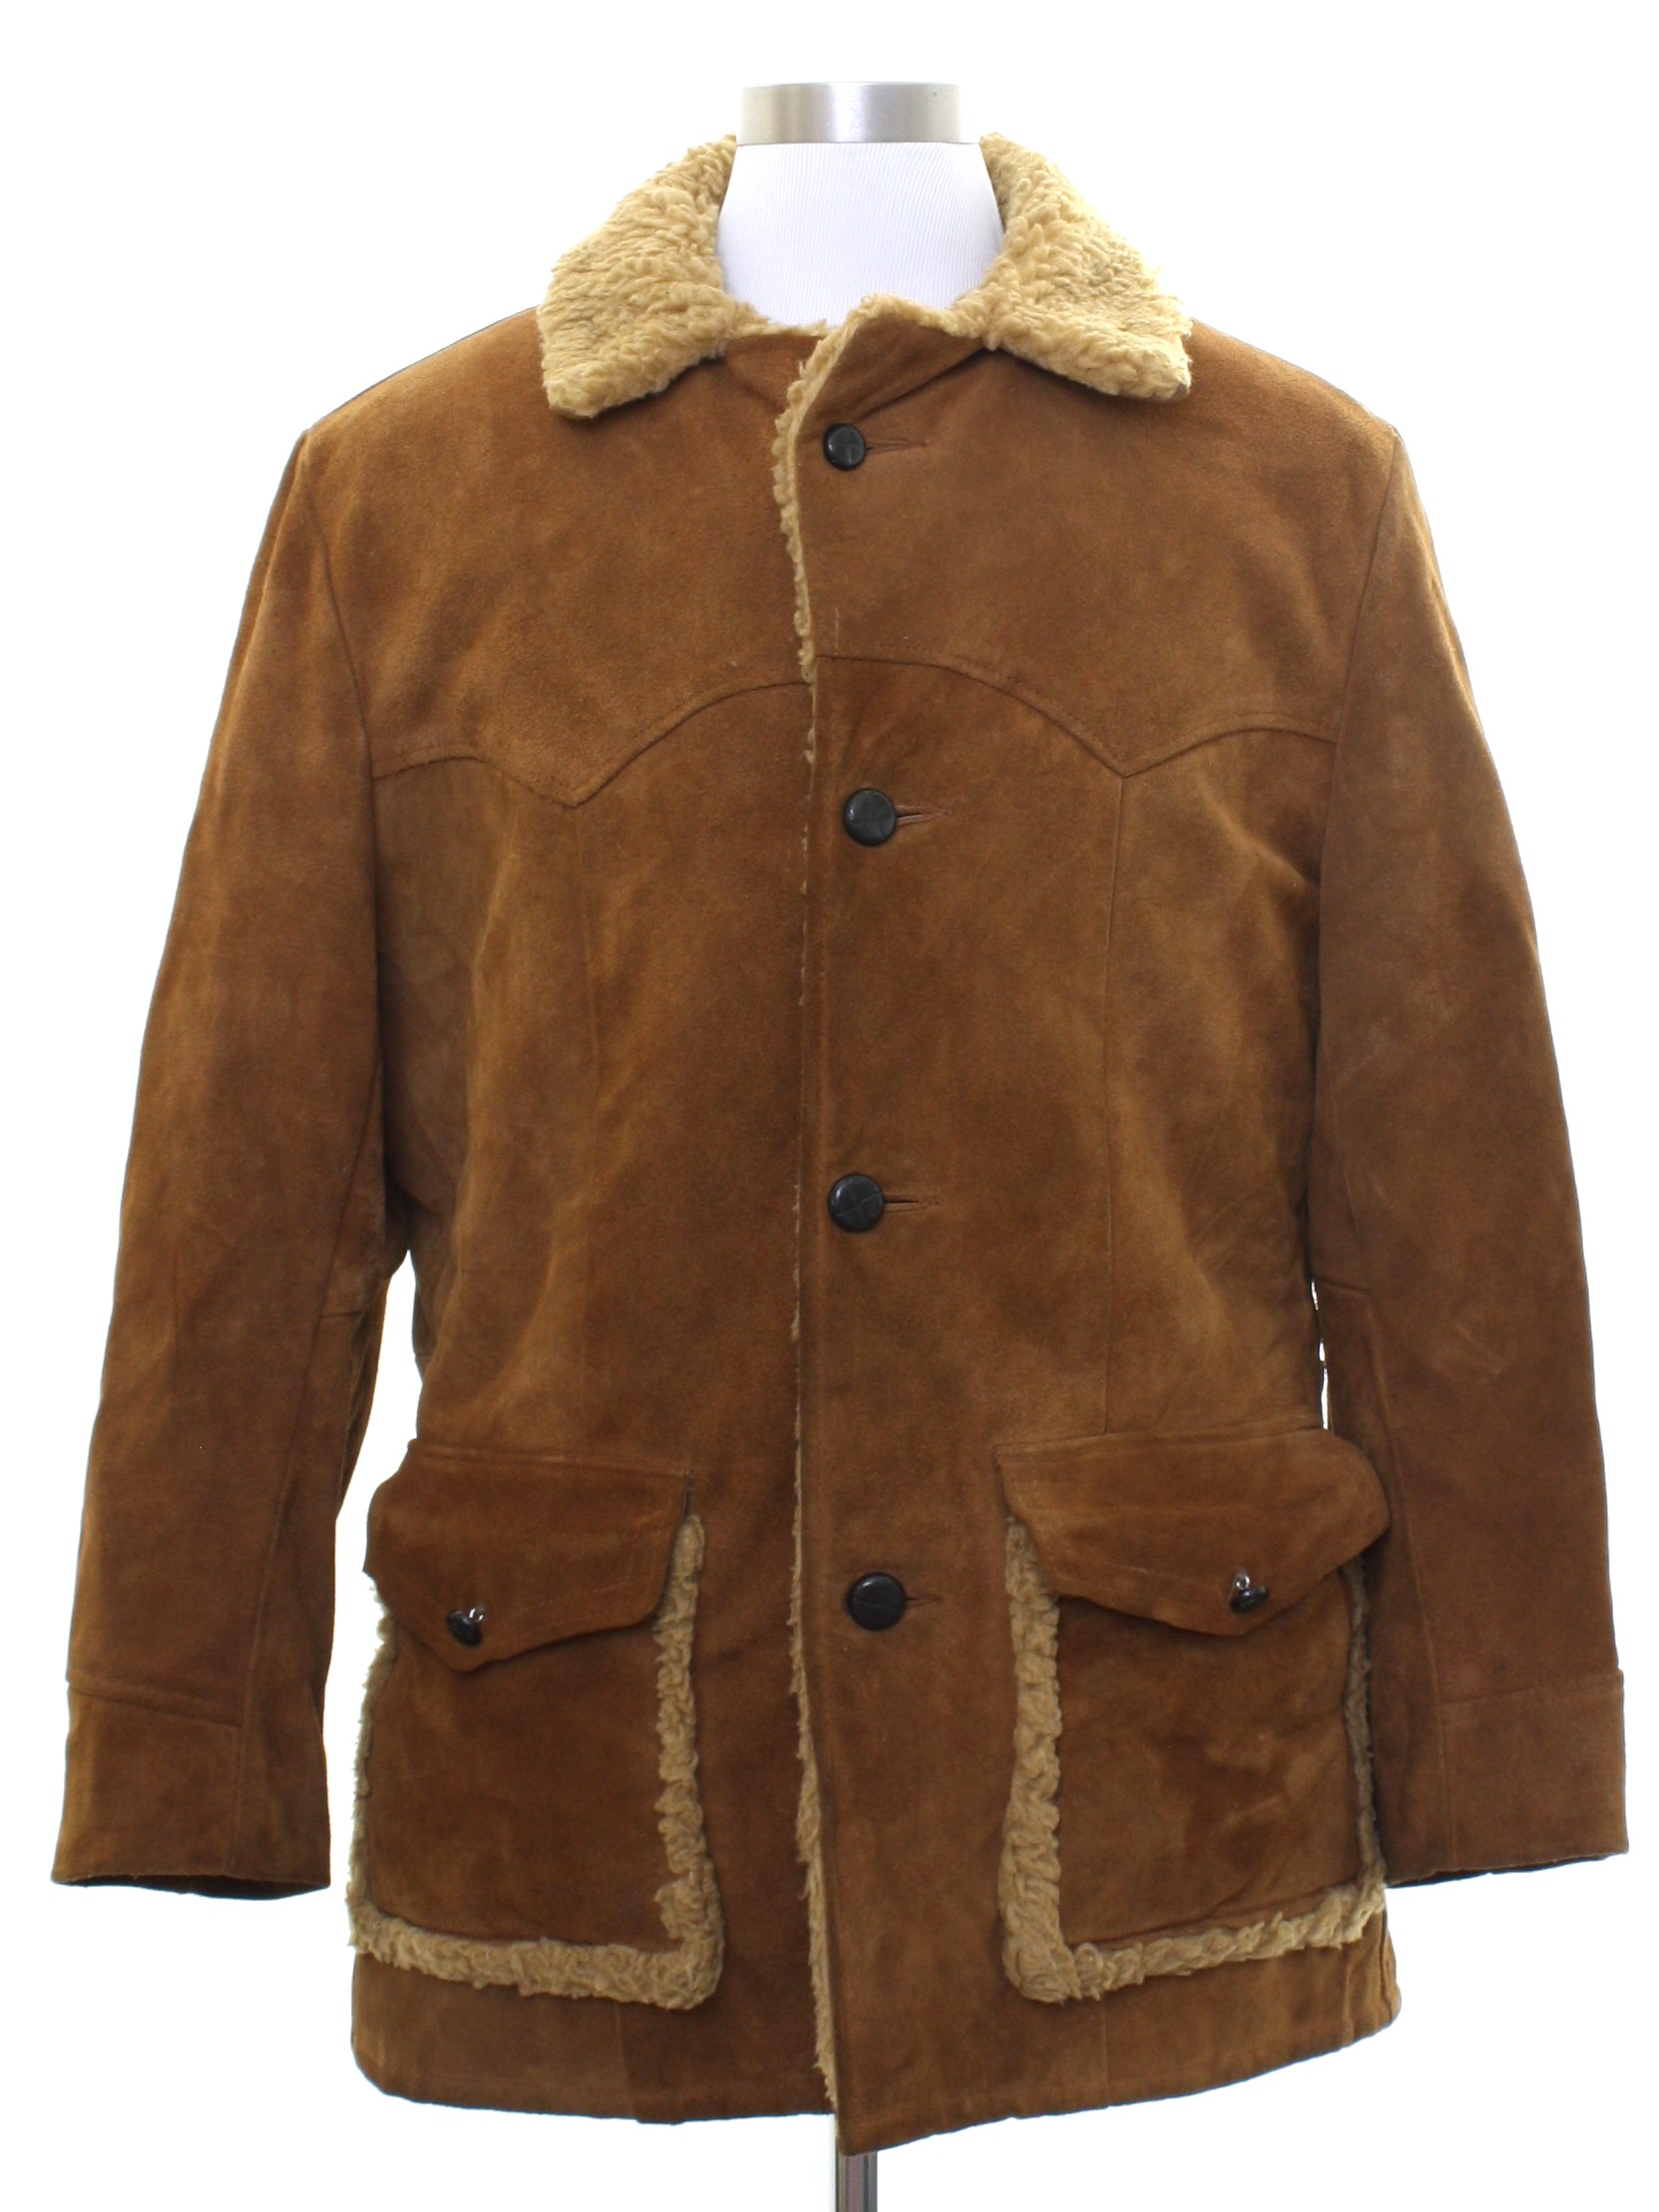 Seventies Gary Gordon Outerwear Leather Jacket: 70s -Gary Gordon ...